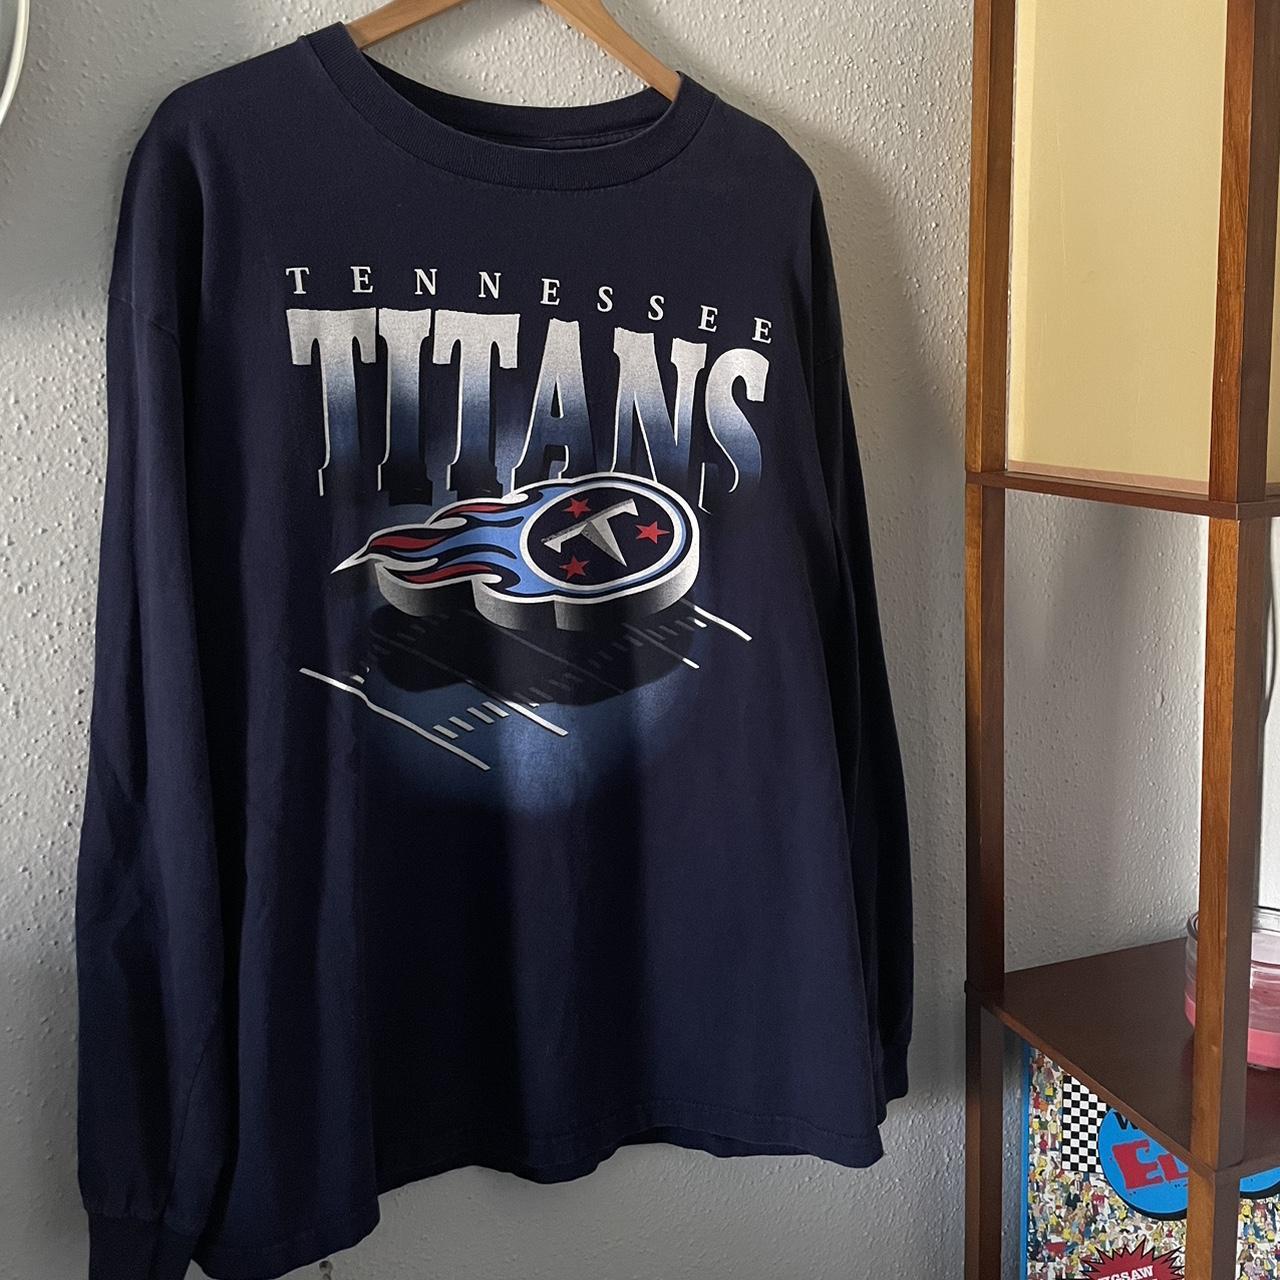 titans sweatshirt vintage